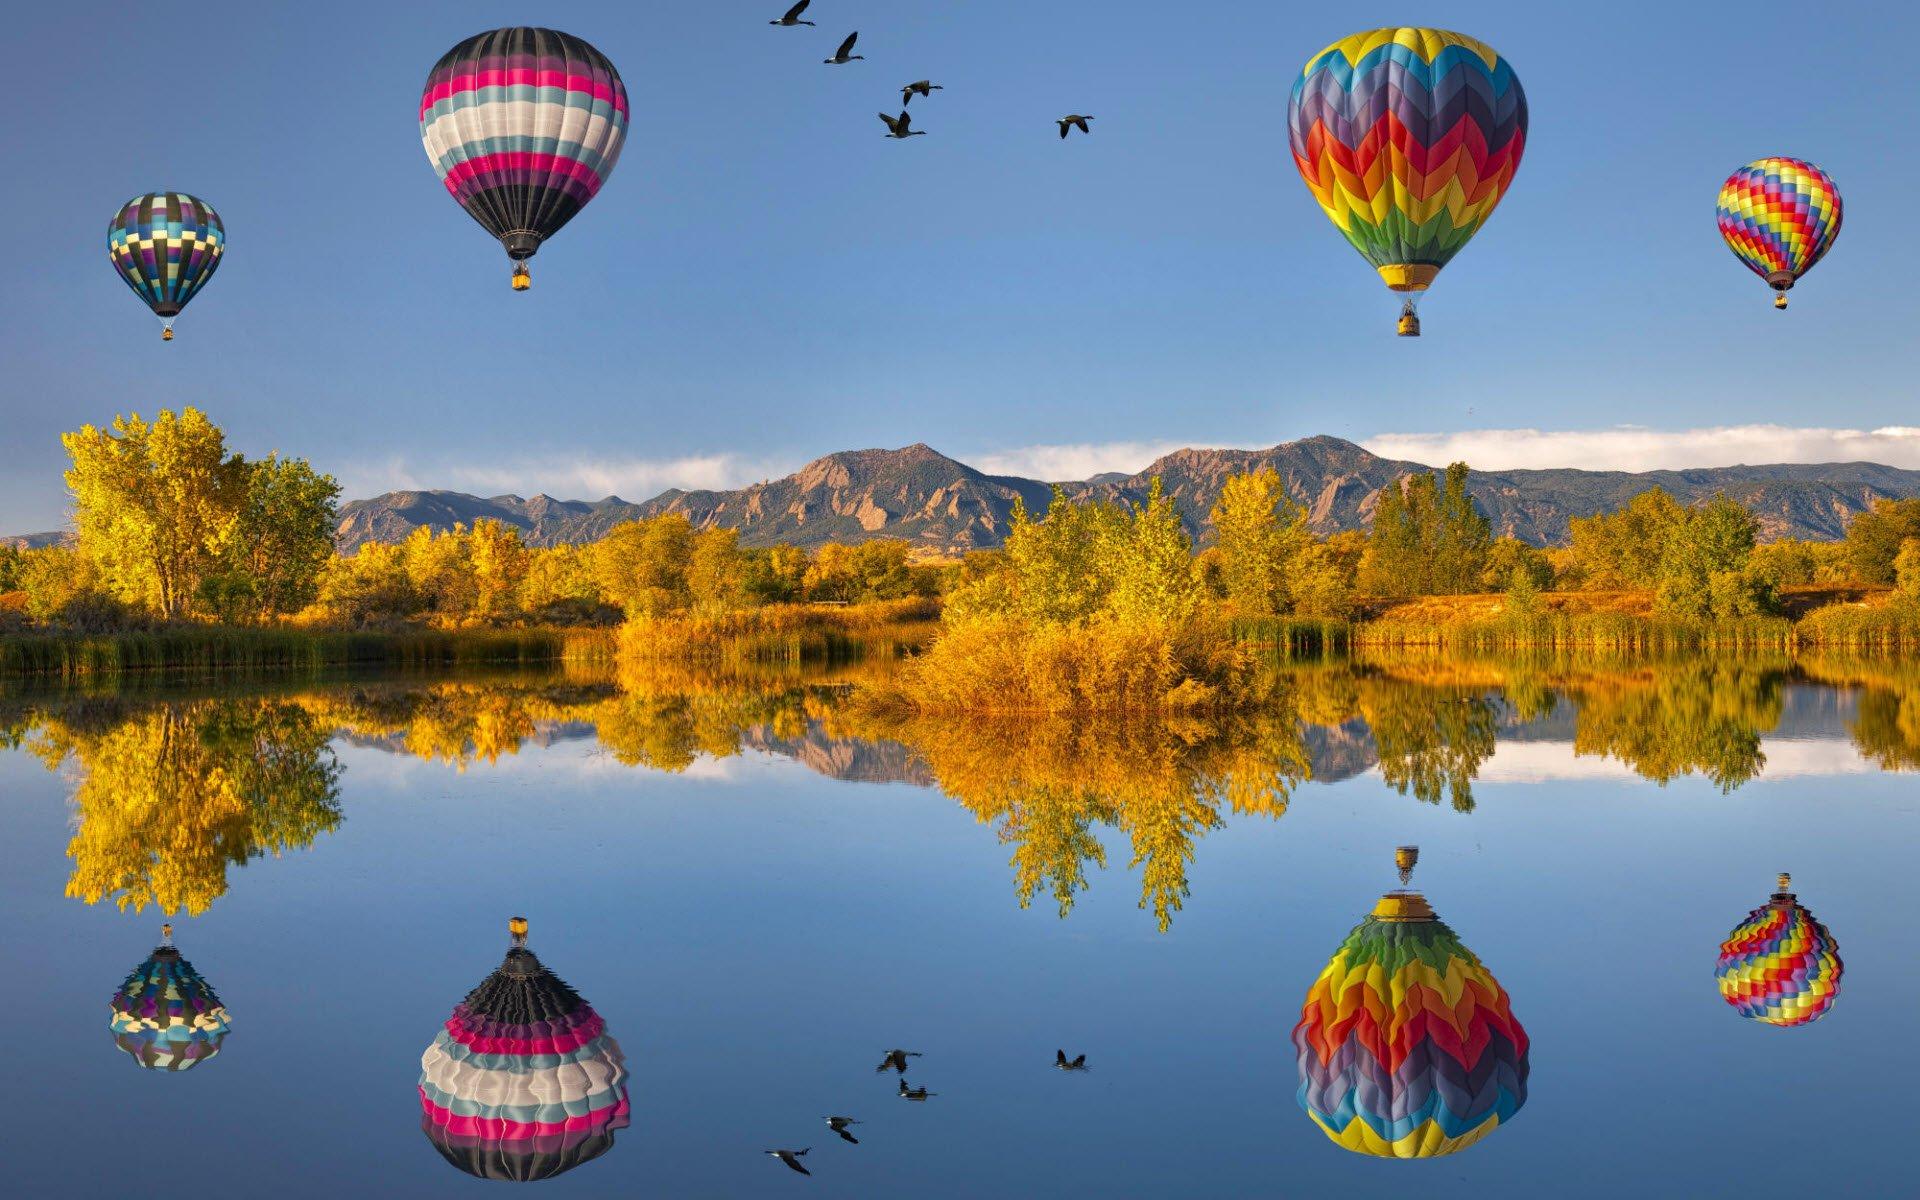 разноцветные воздушные шары в небе, счастливый, несколько, объект фон  картинки и Фото для бесплатной загрузки